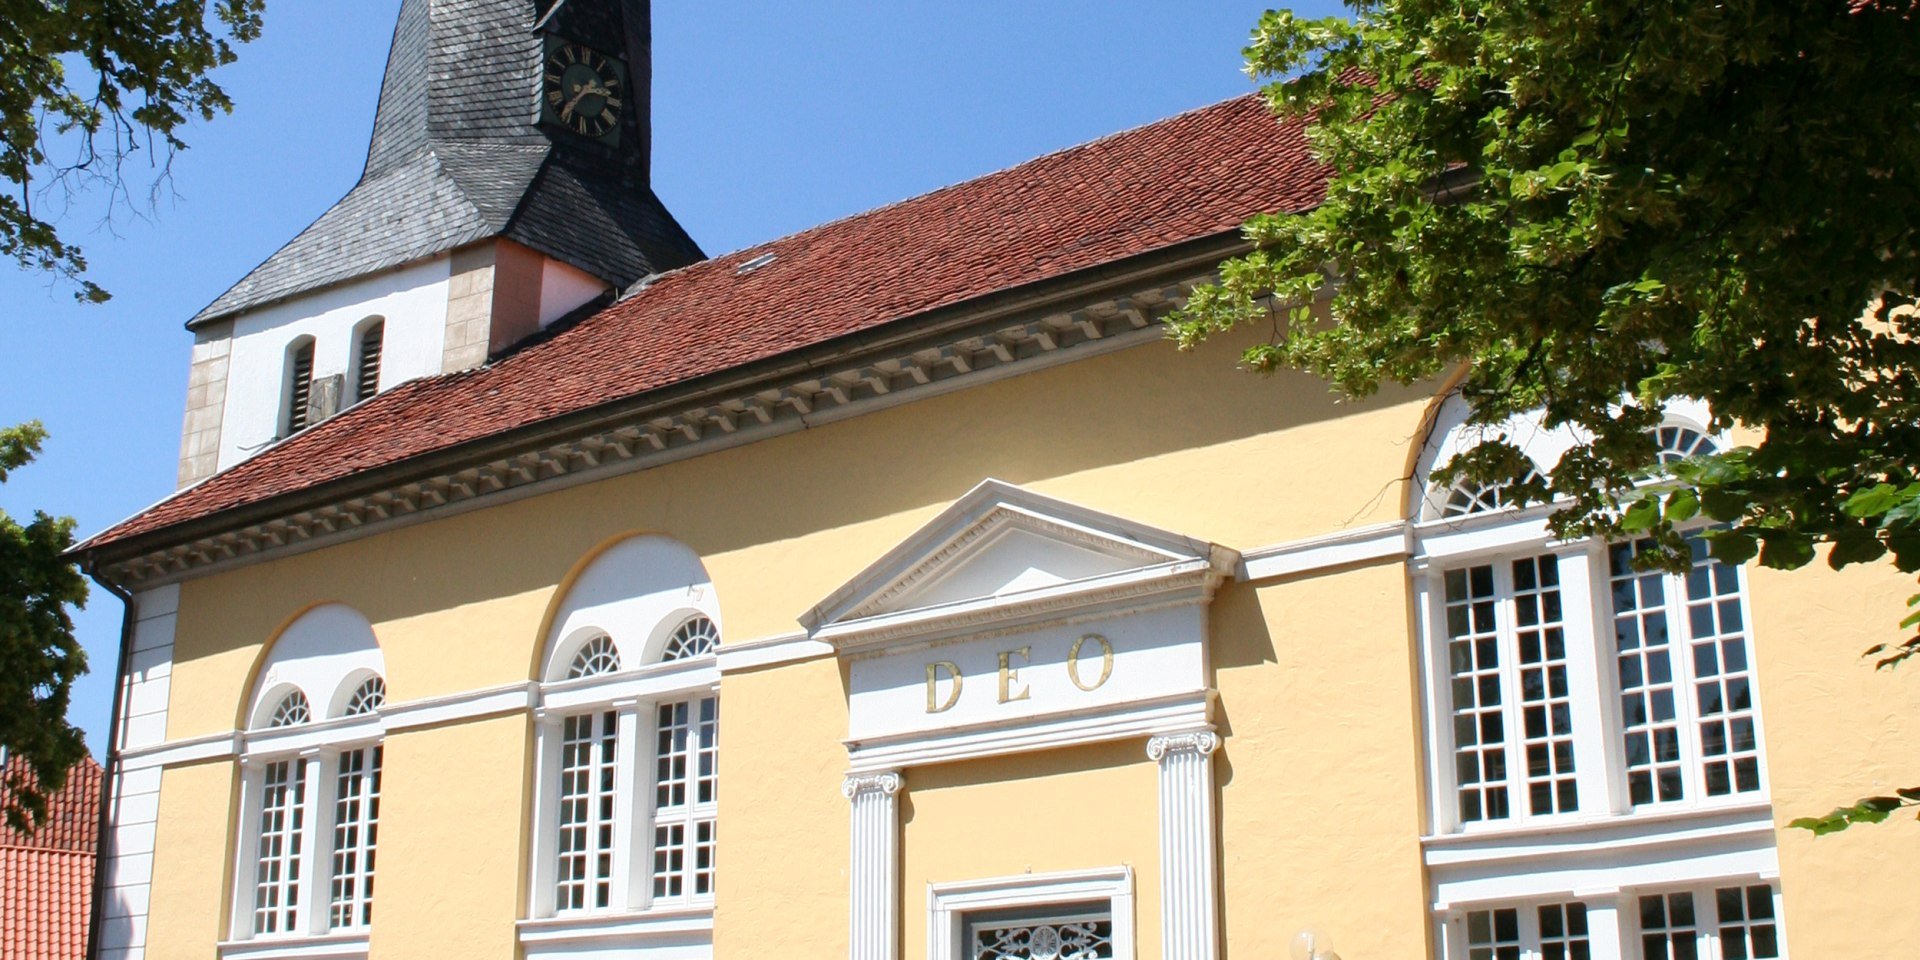 Die St. Jacobi Kirche Stolzenau strahlt in freundlichem gelb unter dem blauen Himmel., © Mittelweser-Touristik GmbH